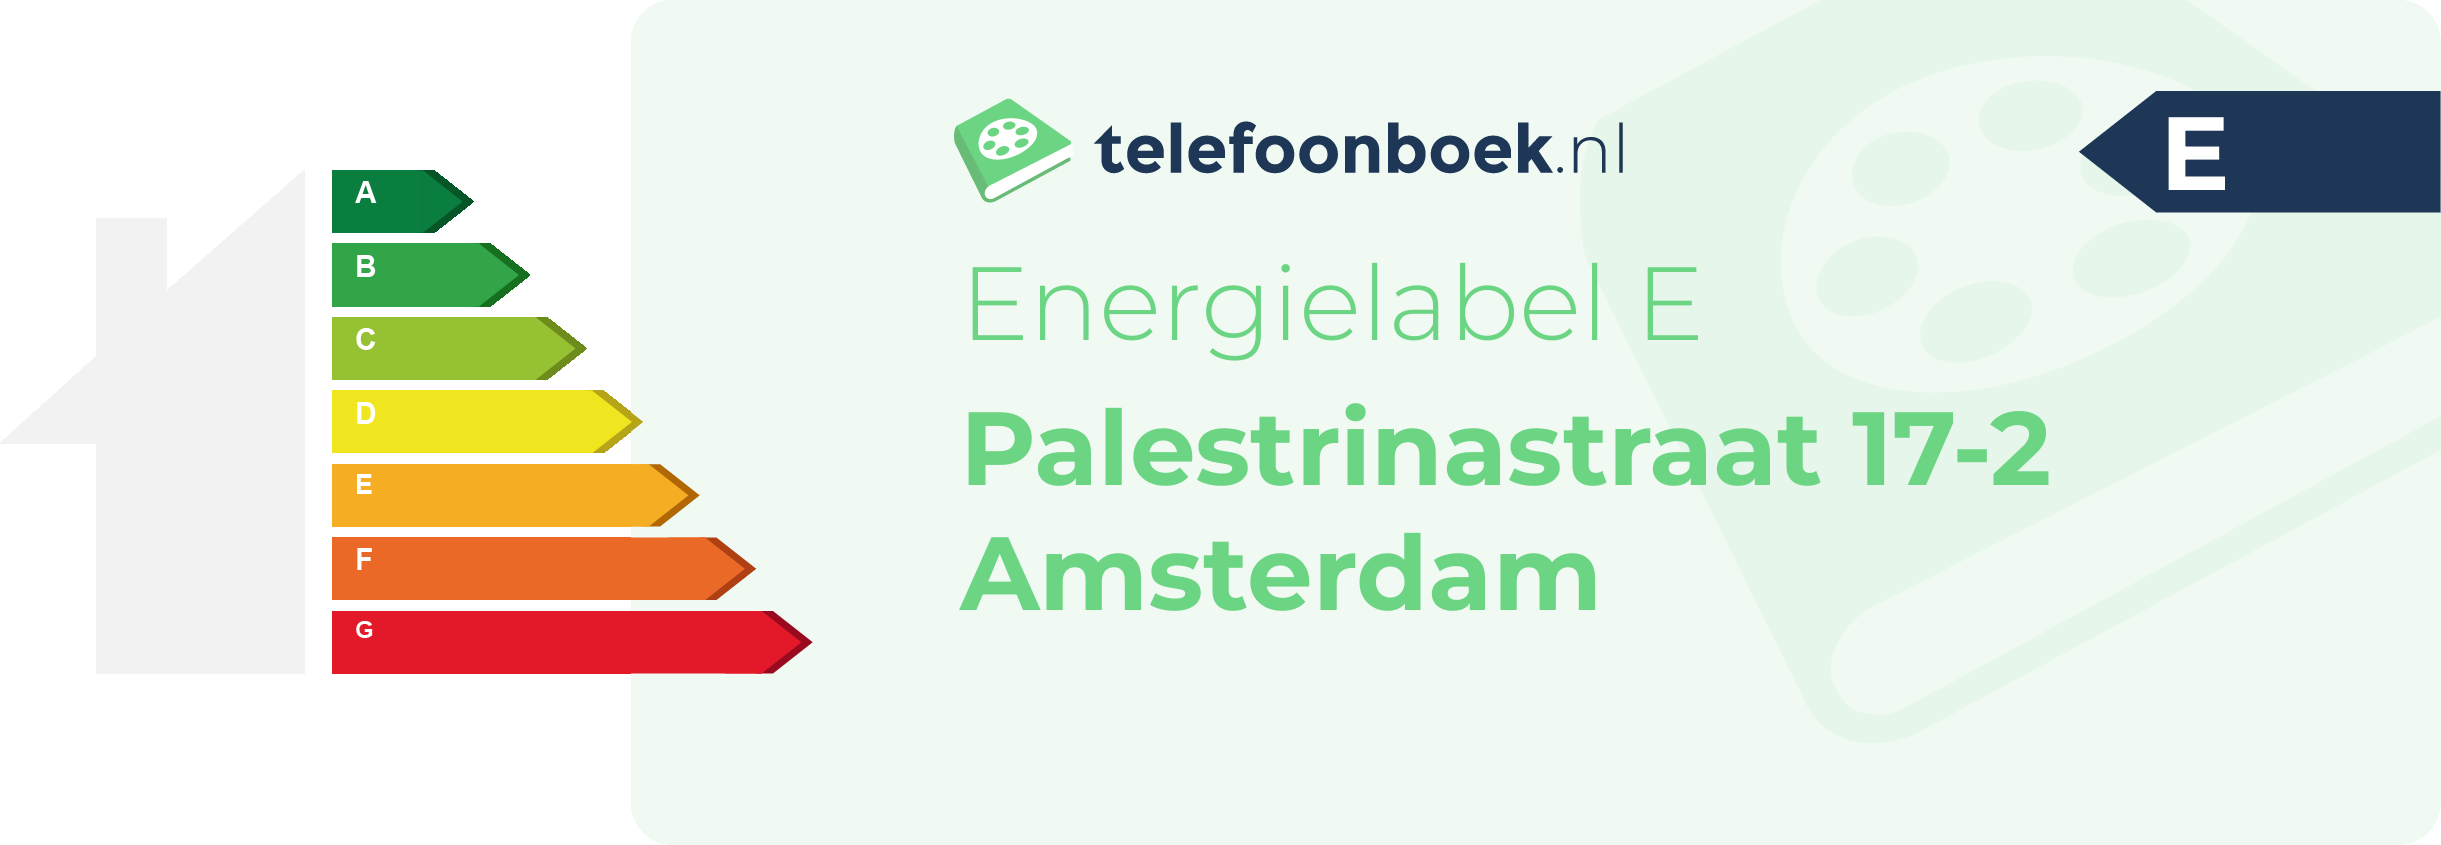 Energielabel Palestrinastraat 17-2 Amsterdam